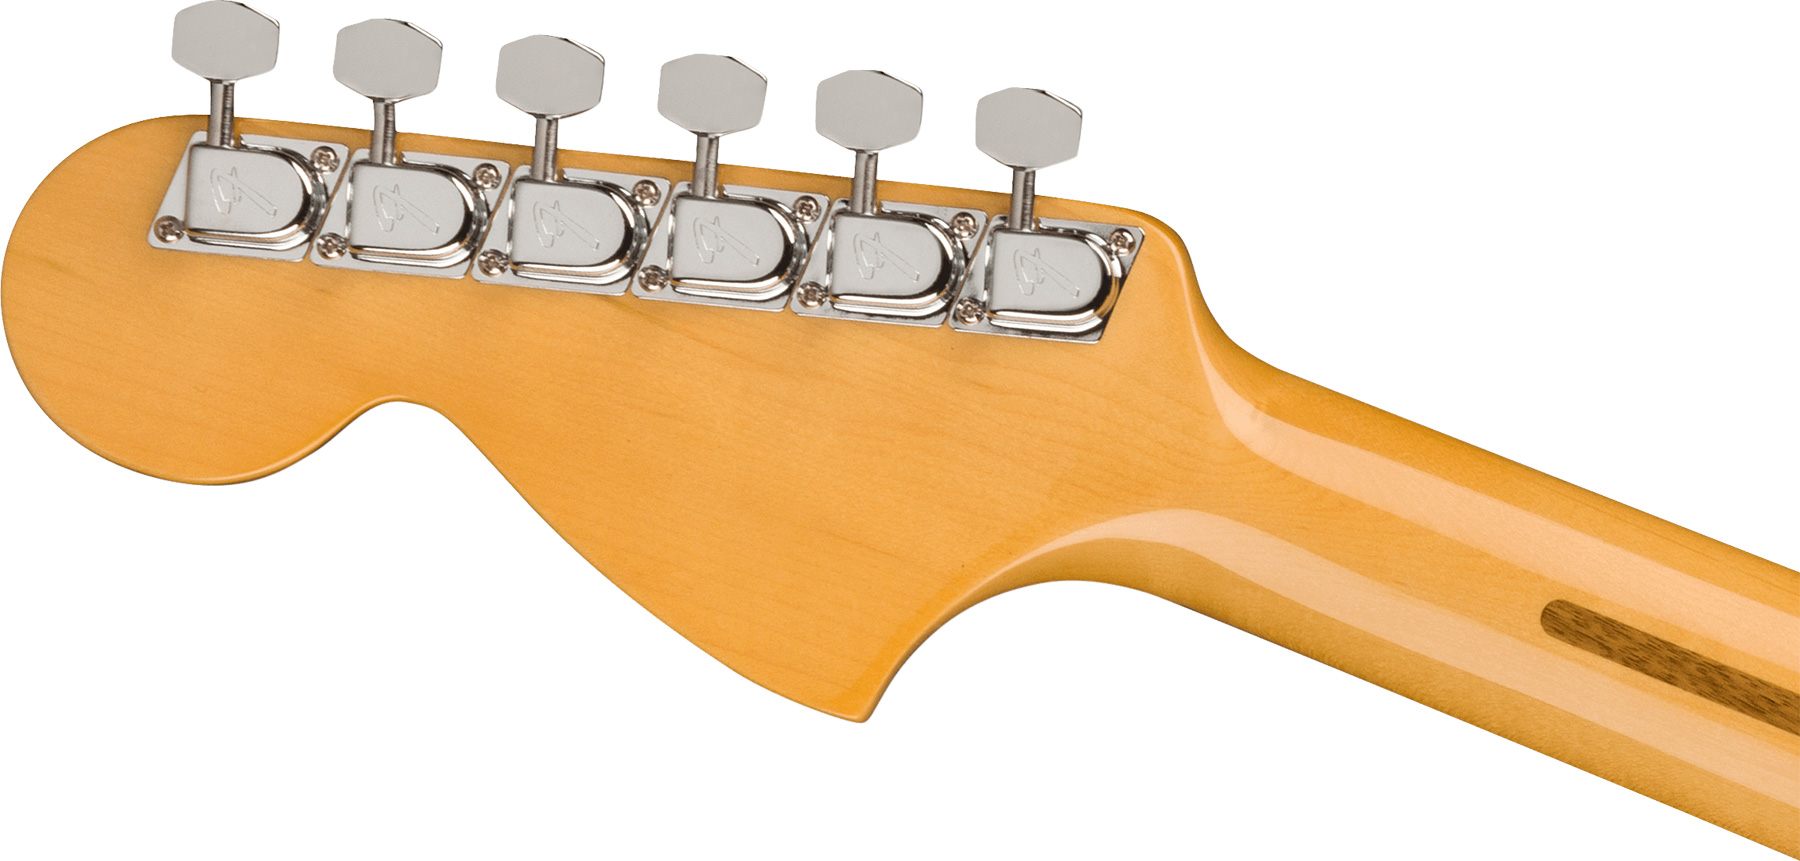 Fender Strat 1973 American Vintage Ii Usa 3s Trem Mn - Lake Placid Blue - Guitare Électrique Forme Str - Variation 3